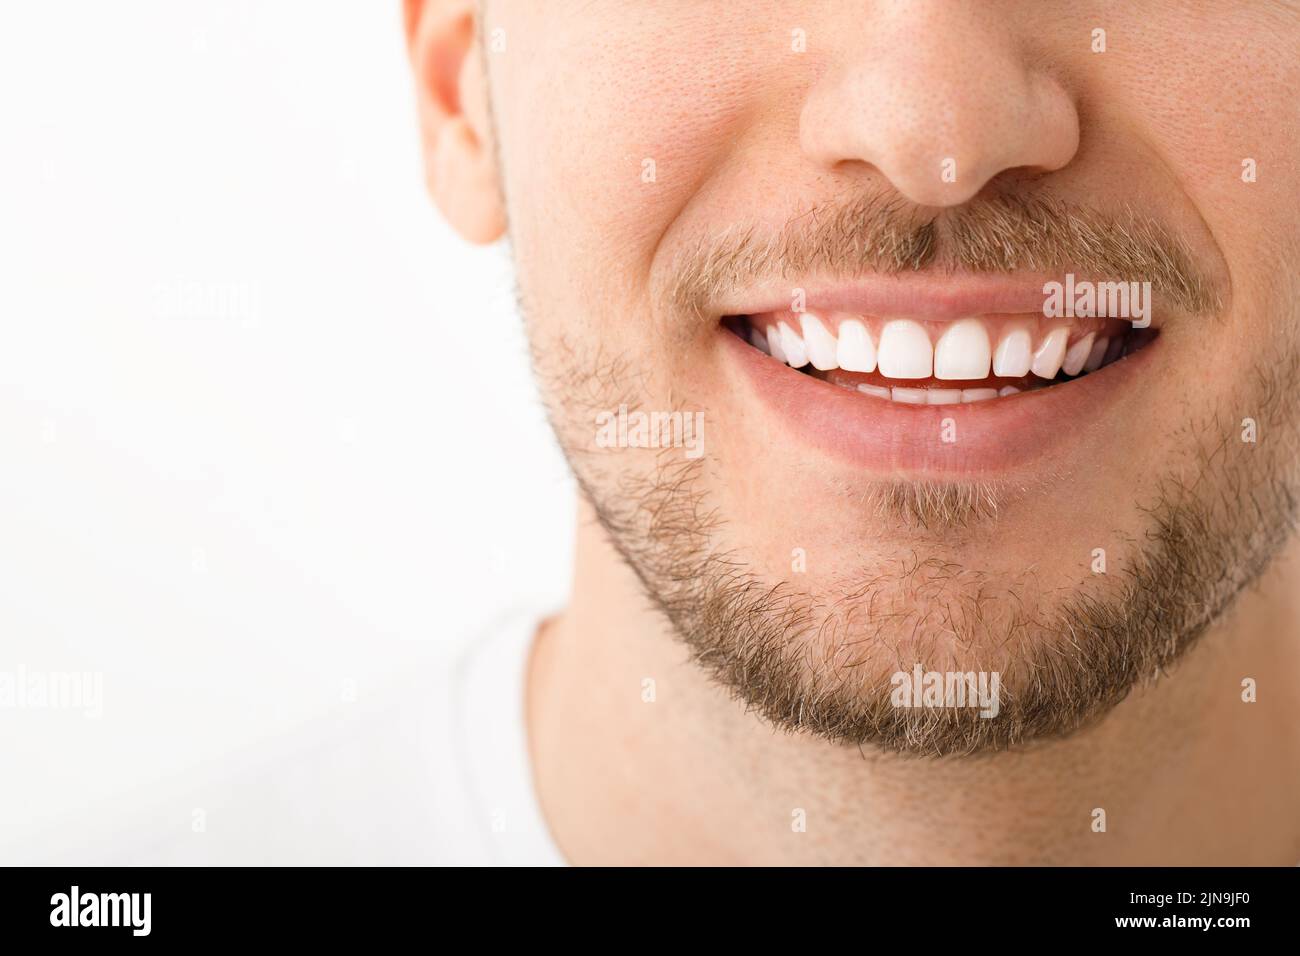 Ein schöner Mann lächelt. Ein Lächeln mit weißen Zähnen. Nahaufnahme des Bildes. Weißer Hintergrund mit Copyspace. Stockfoto